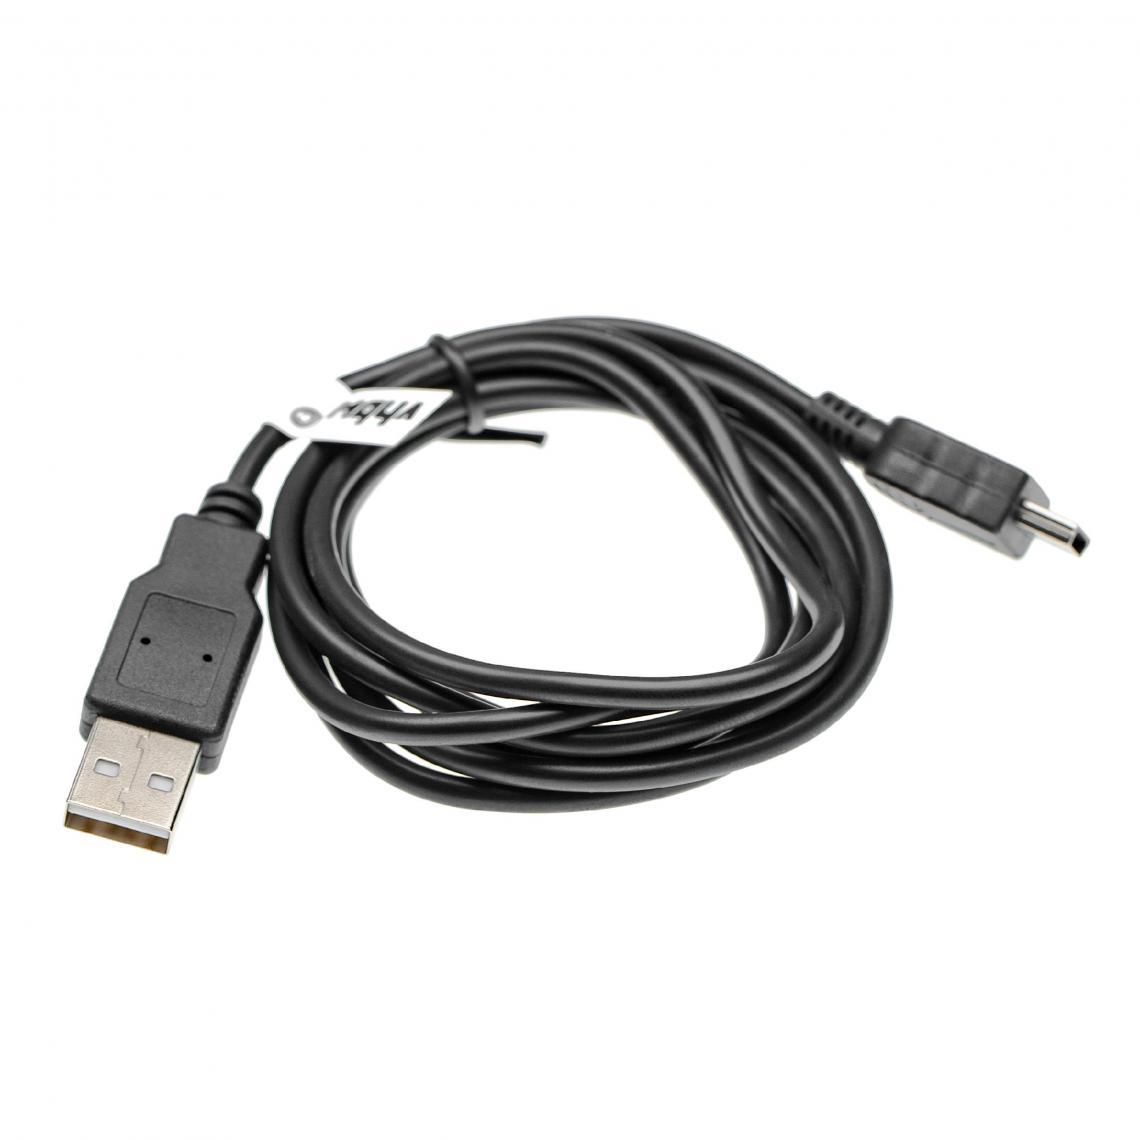 Vhbw - vhbw Câble de charge USB compatible avec Texas Instruments TI-84 Plus CE calculatrice graphique - 100 cm, noir - Autre appareil de mesure